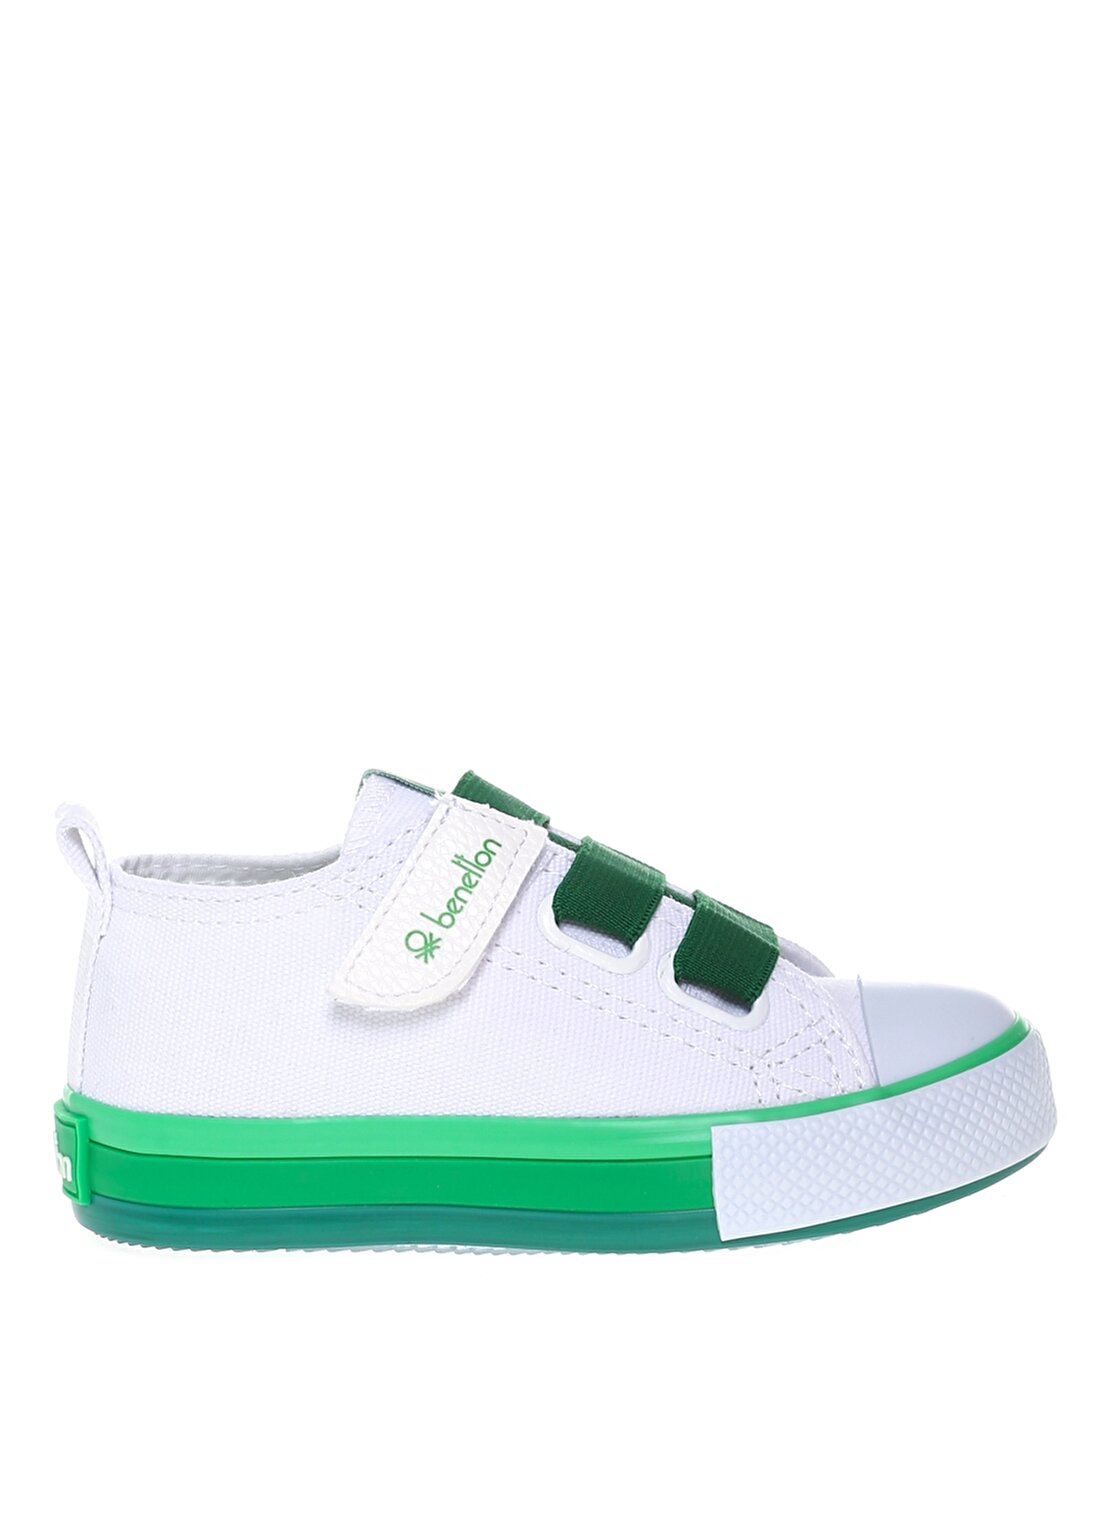 Benetton Beyaz - Yeşil Erkek Çocuk Yürüyüş Ayakkabısı BN-30649 178-Beyaz-Yesil